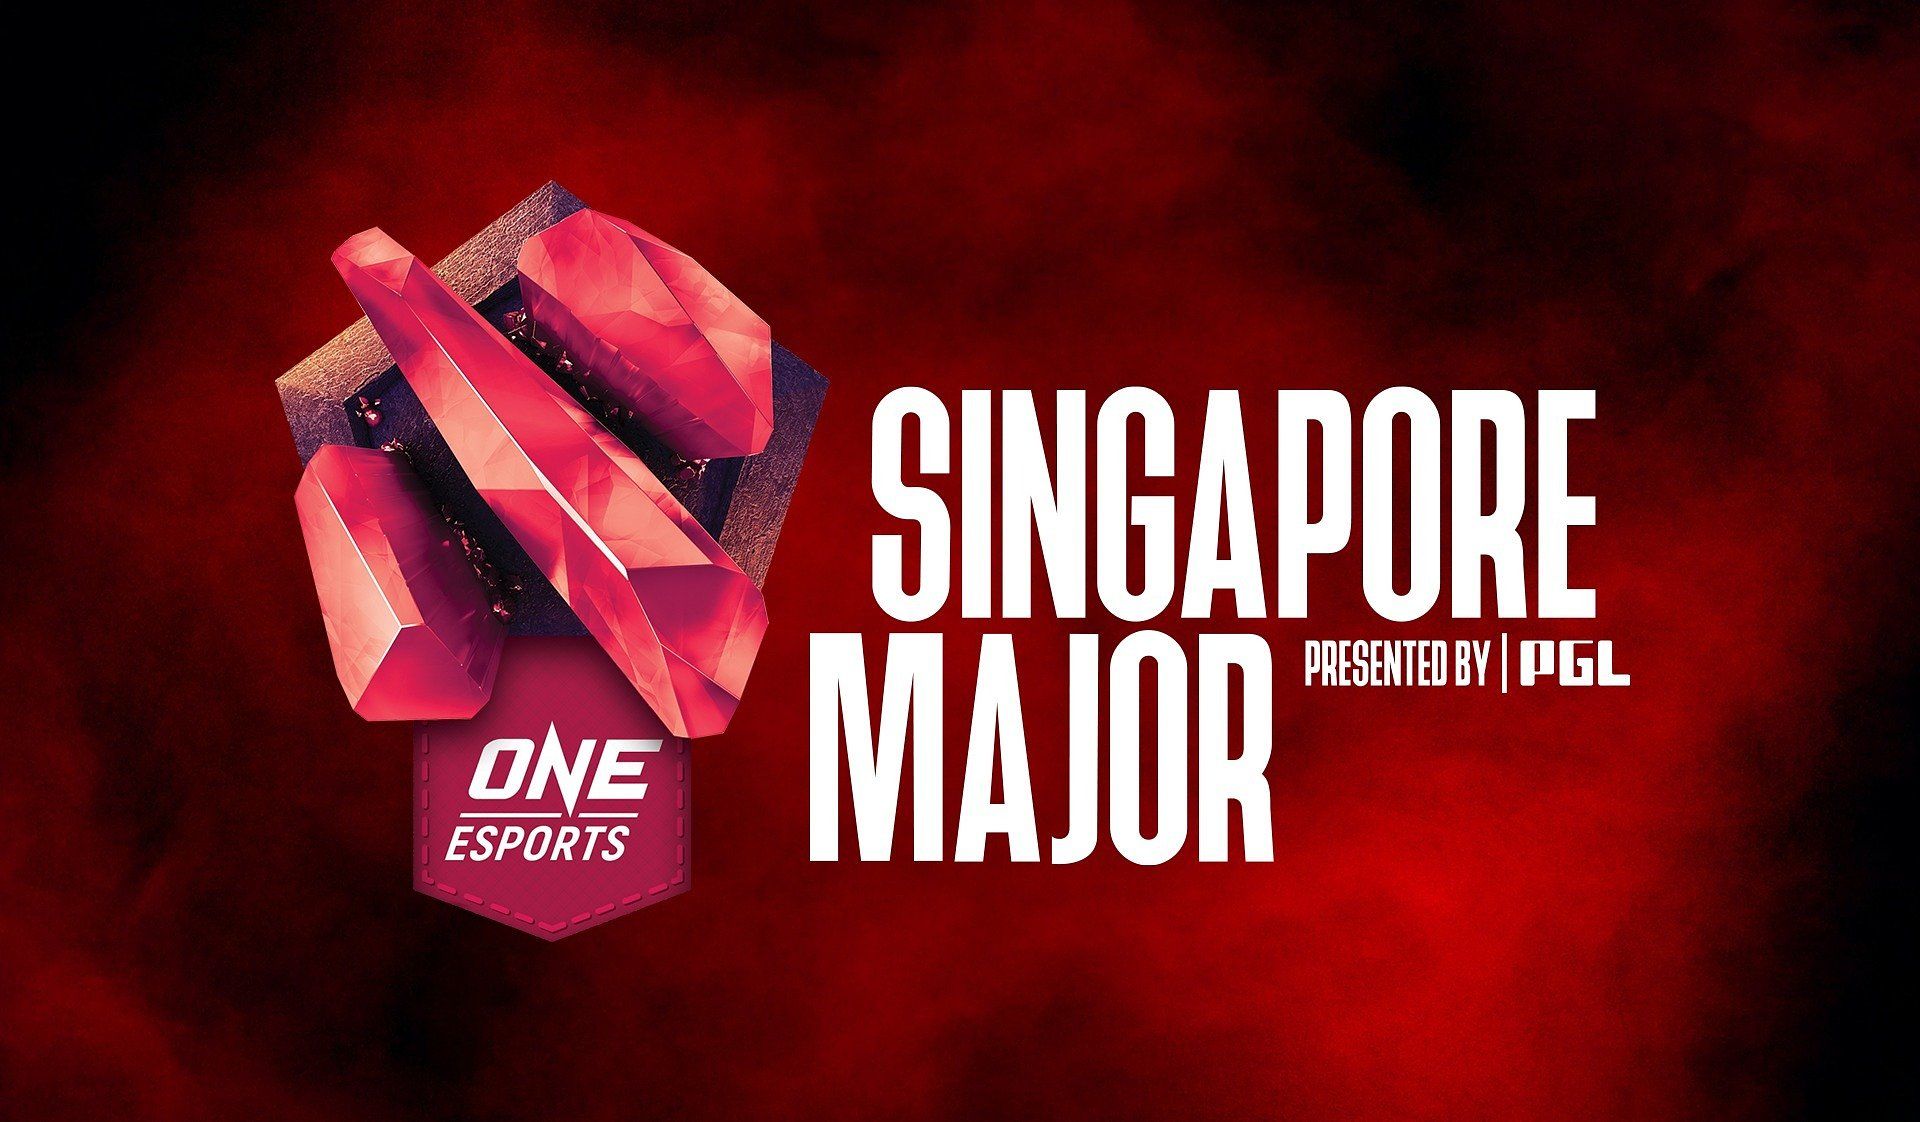 В Сингапуре появились автобусы с символикой ONE Esports Singapore Major 2021